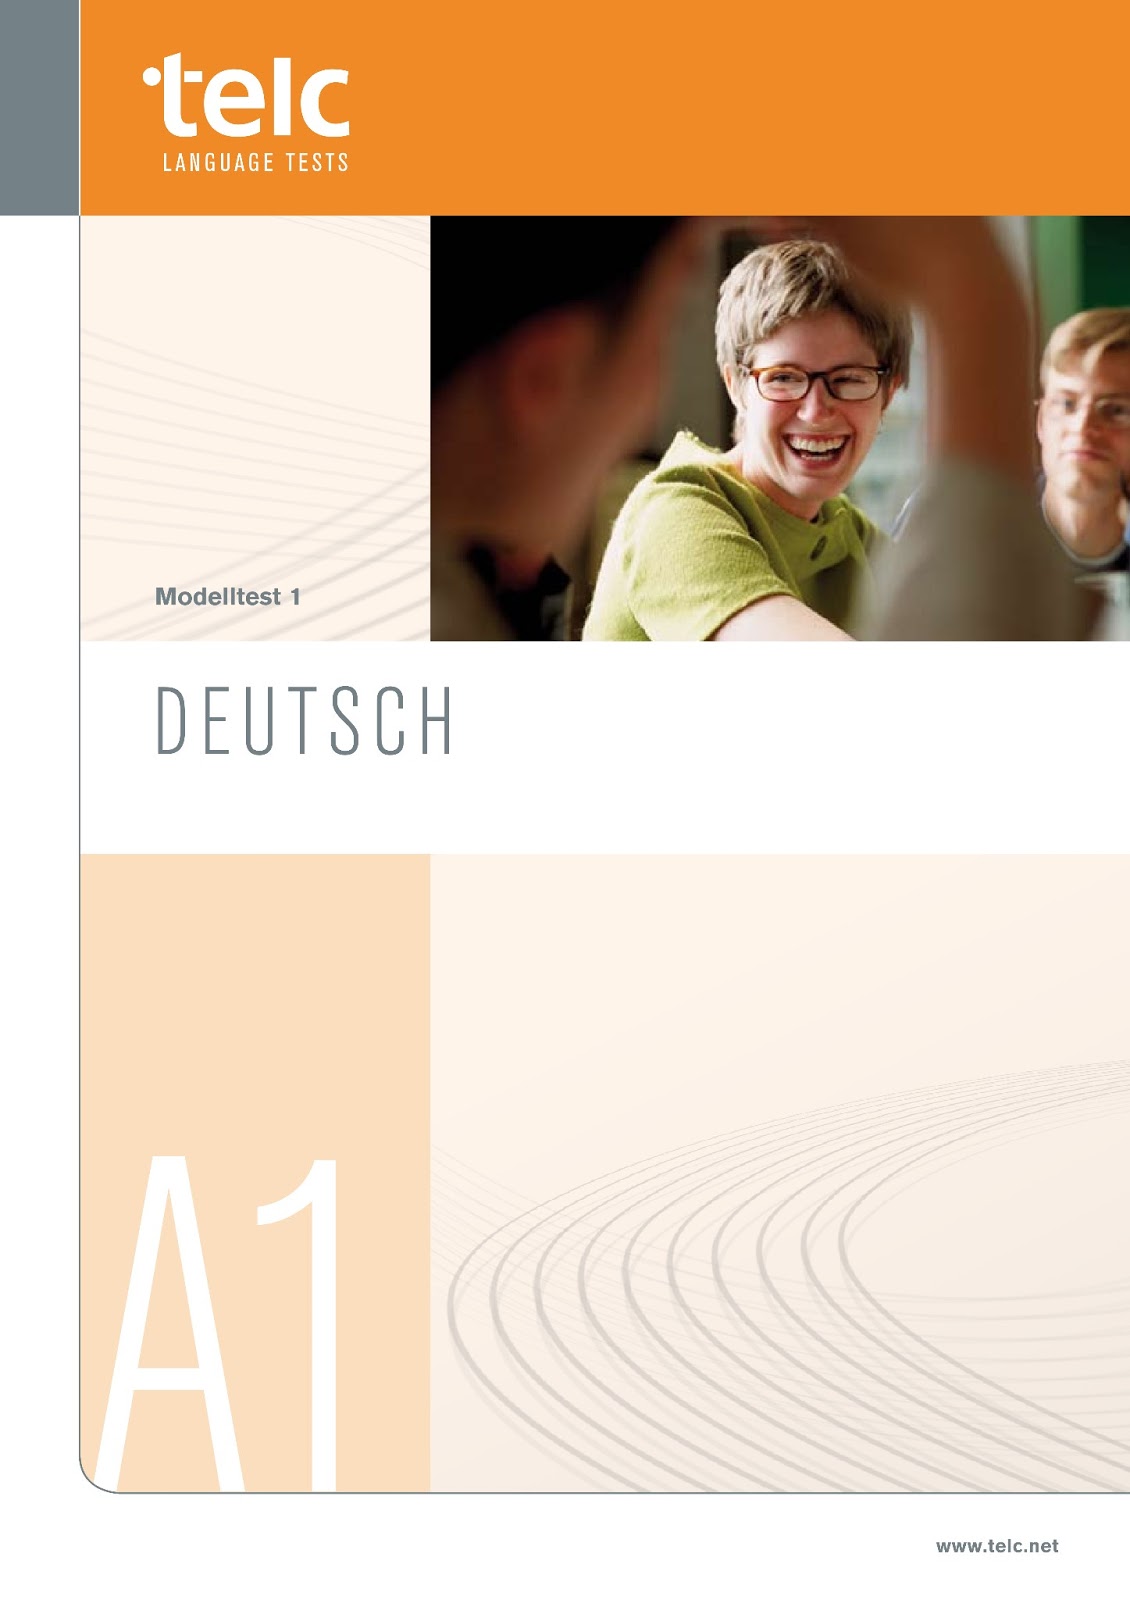 Download telc Start Deutsch 1.